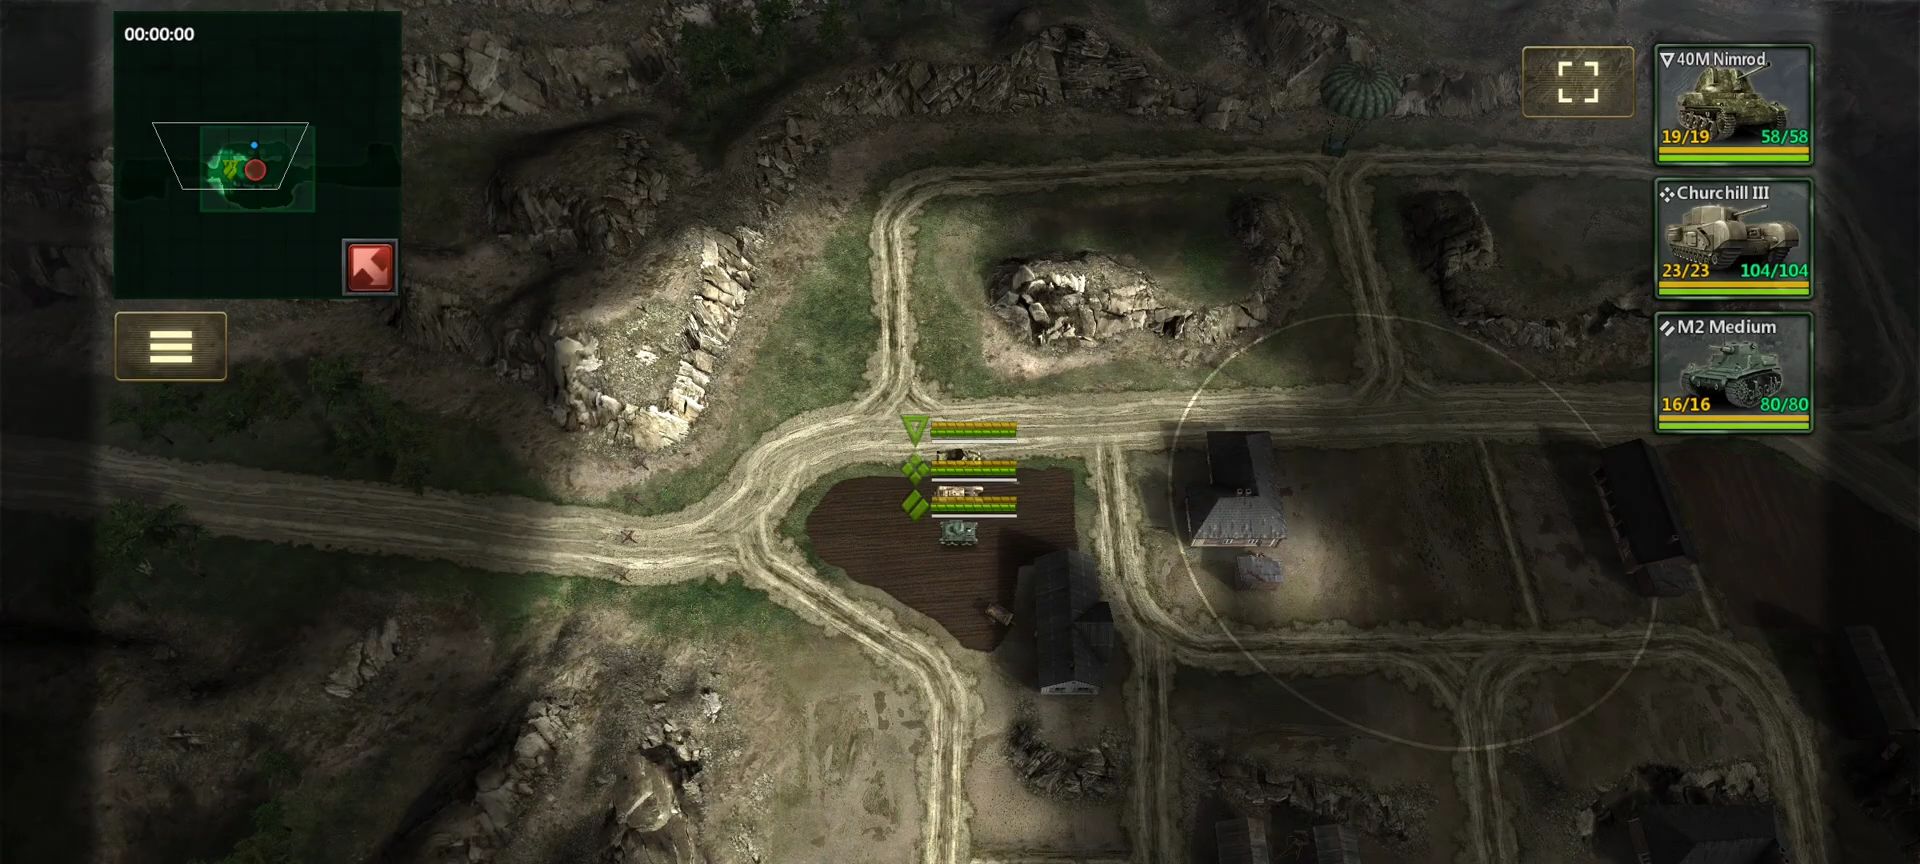 Скачать Tanks Charge: Online PvP Arena: Android Изометрические шутеры игра на телефон и планшет.